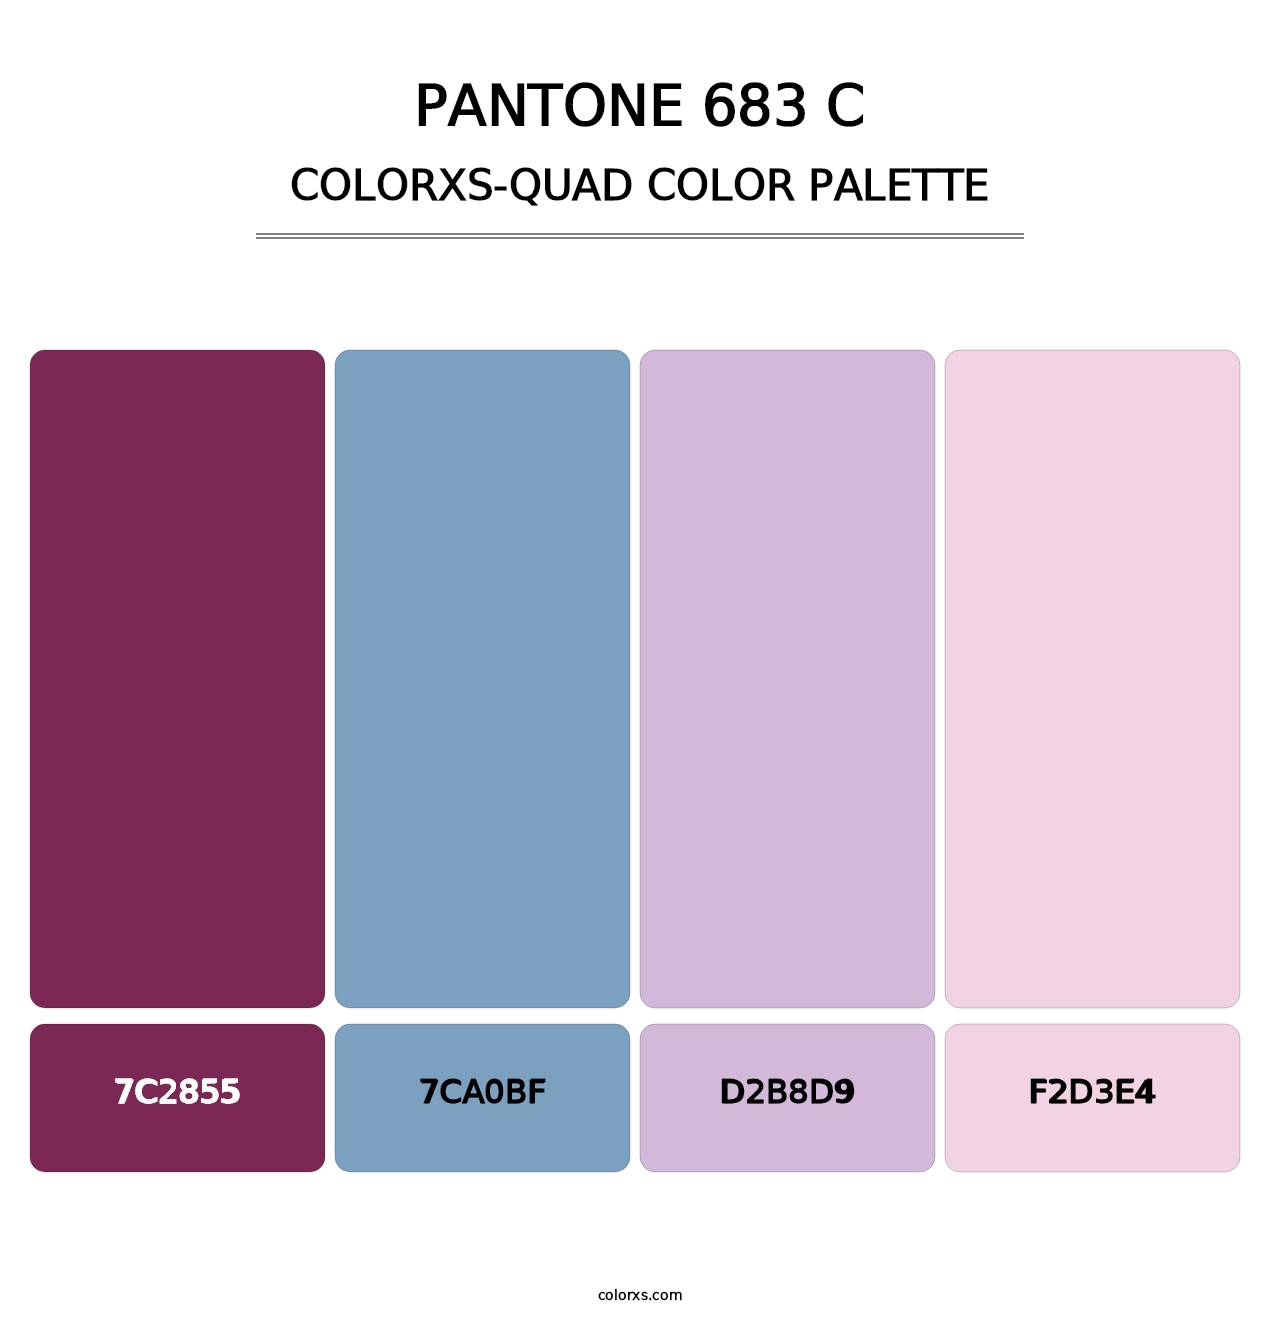 PANTONE 683 C - Colorxs Quad Palette